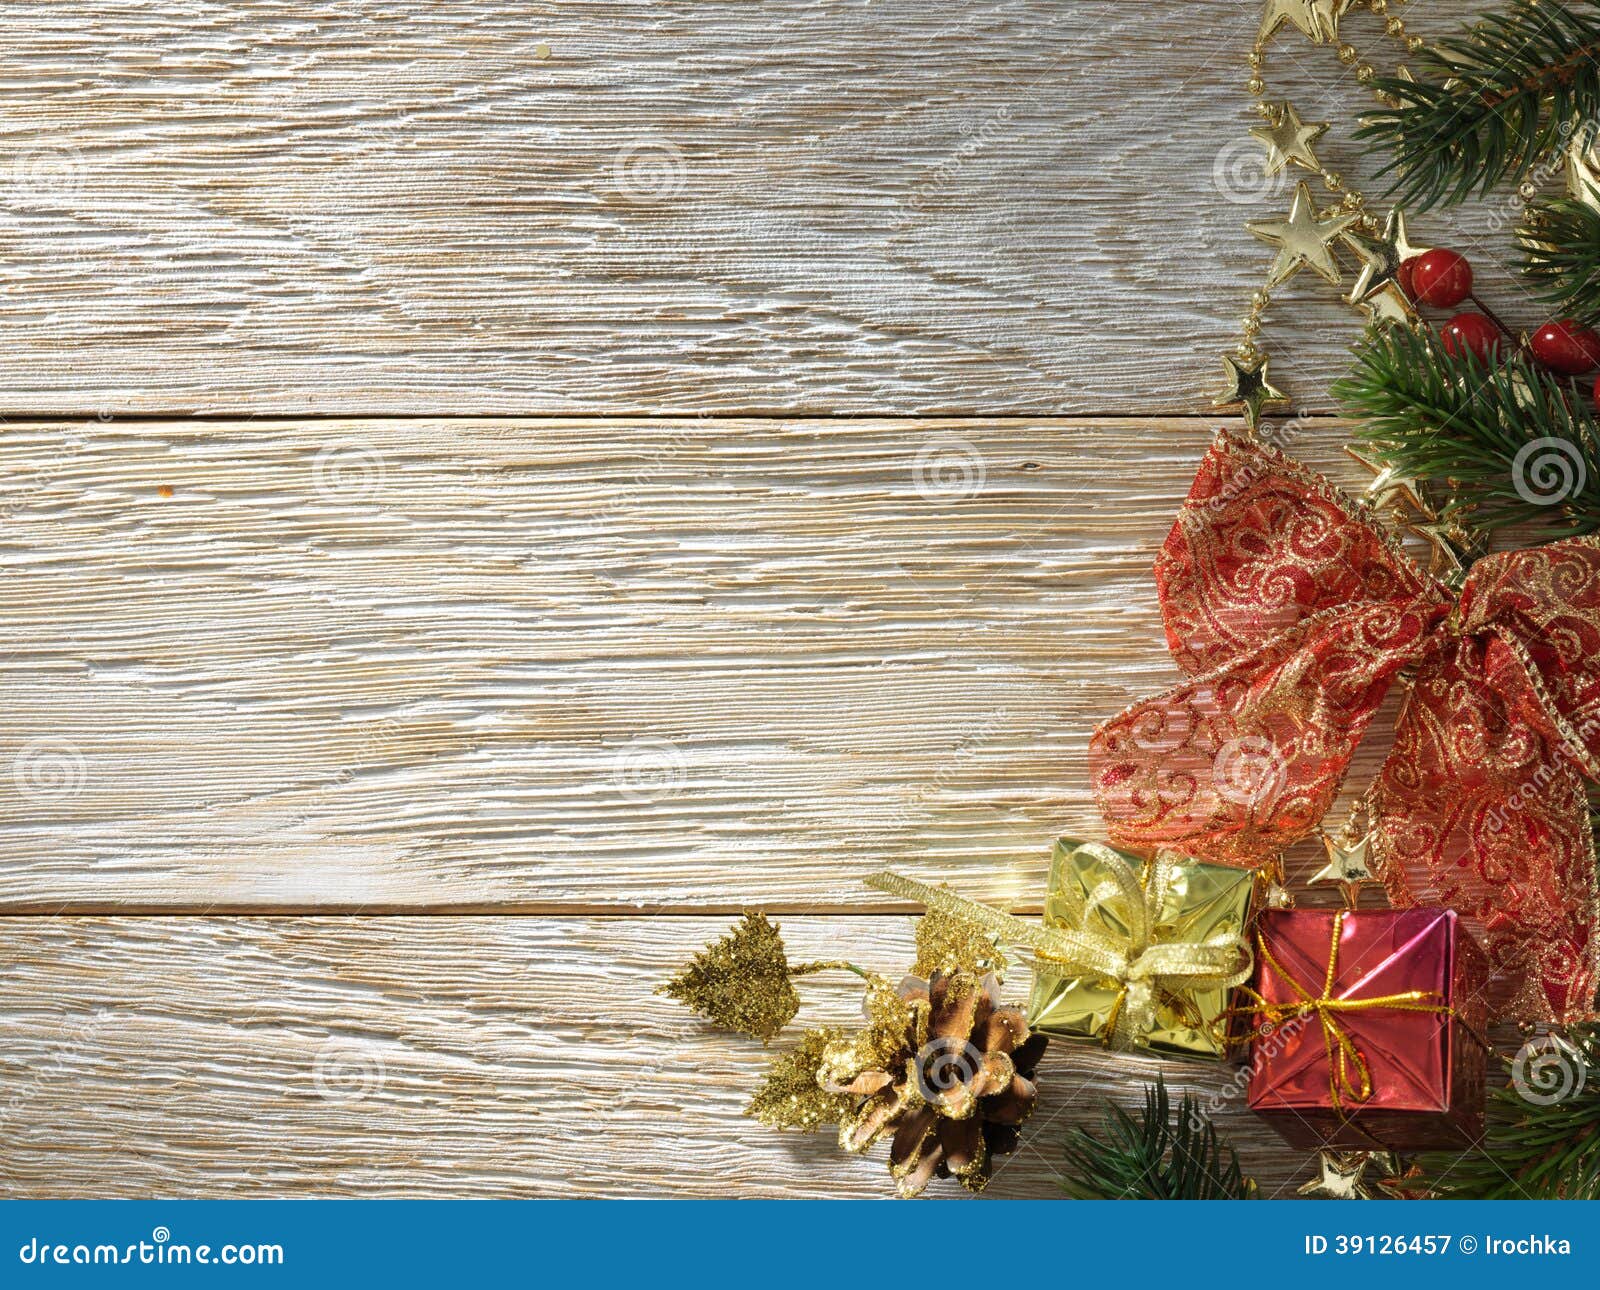 Christmas Fir Tree on Wood Texture. Stock Image - Image of christmas ...